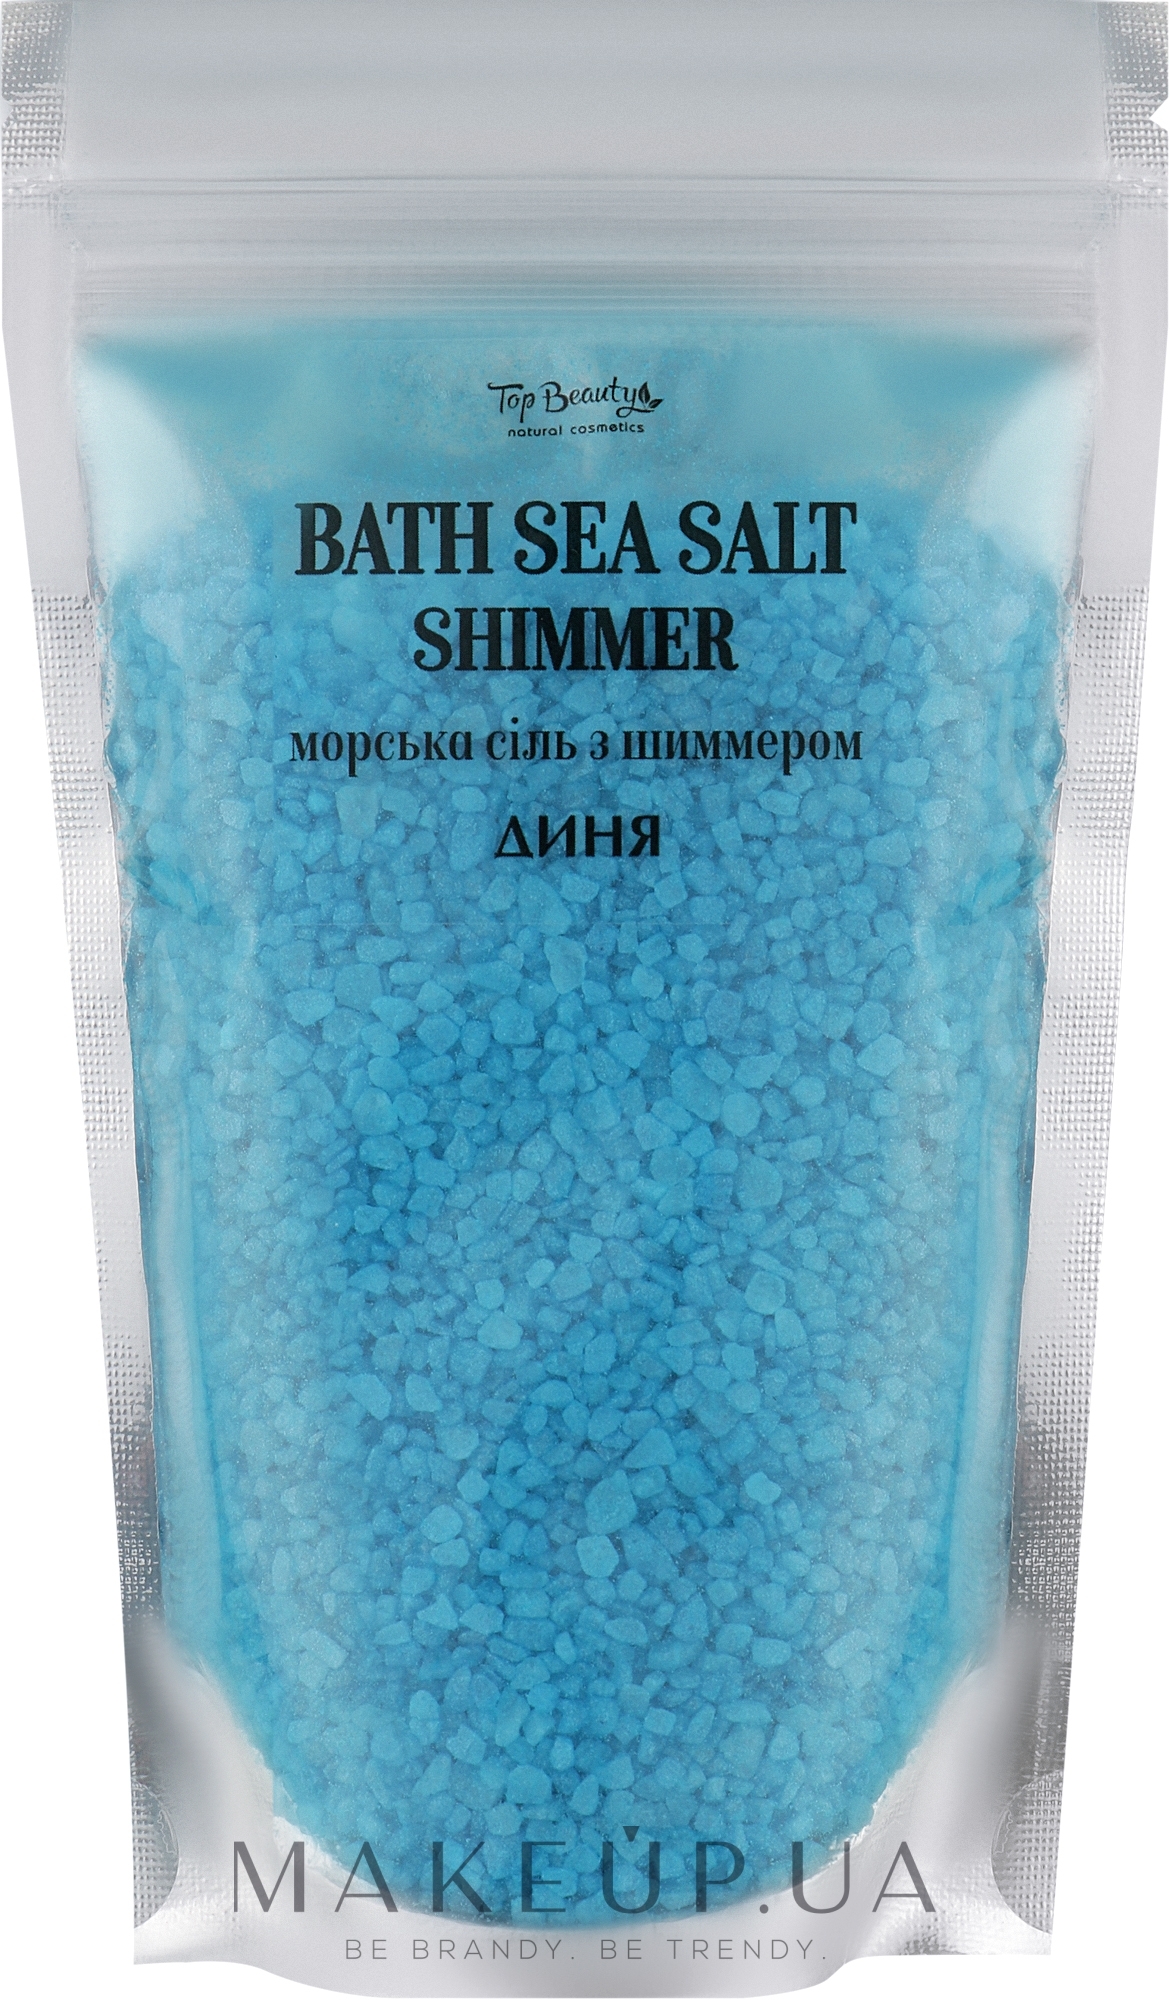 Сіль морська з шимером для ванни "Диня" - Top Beauty Bath Salt  — фото 250g